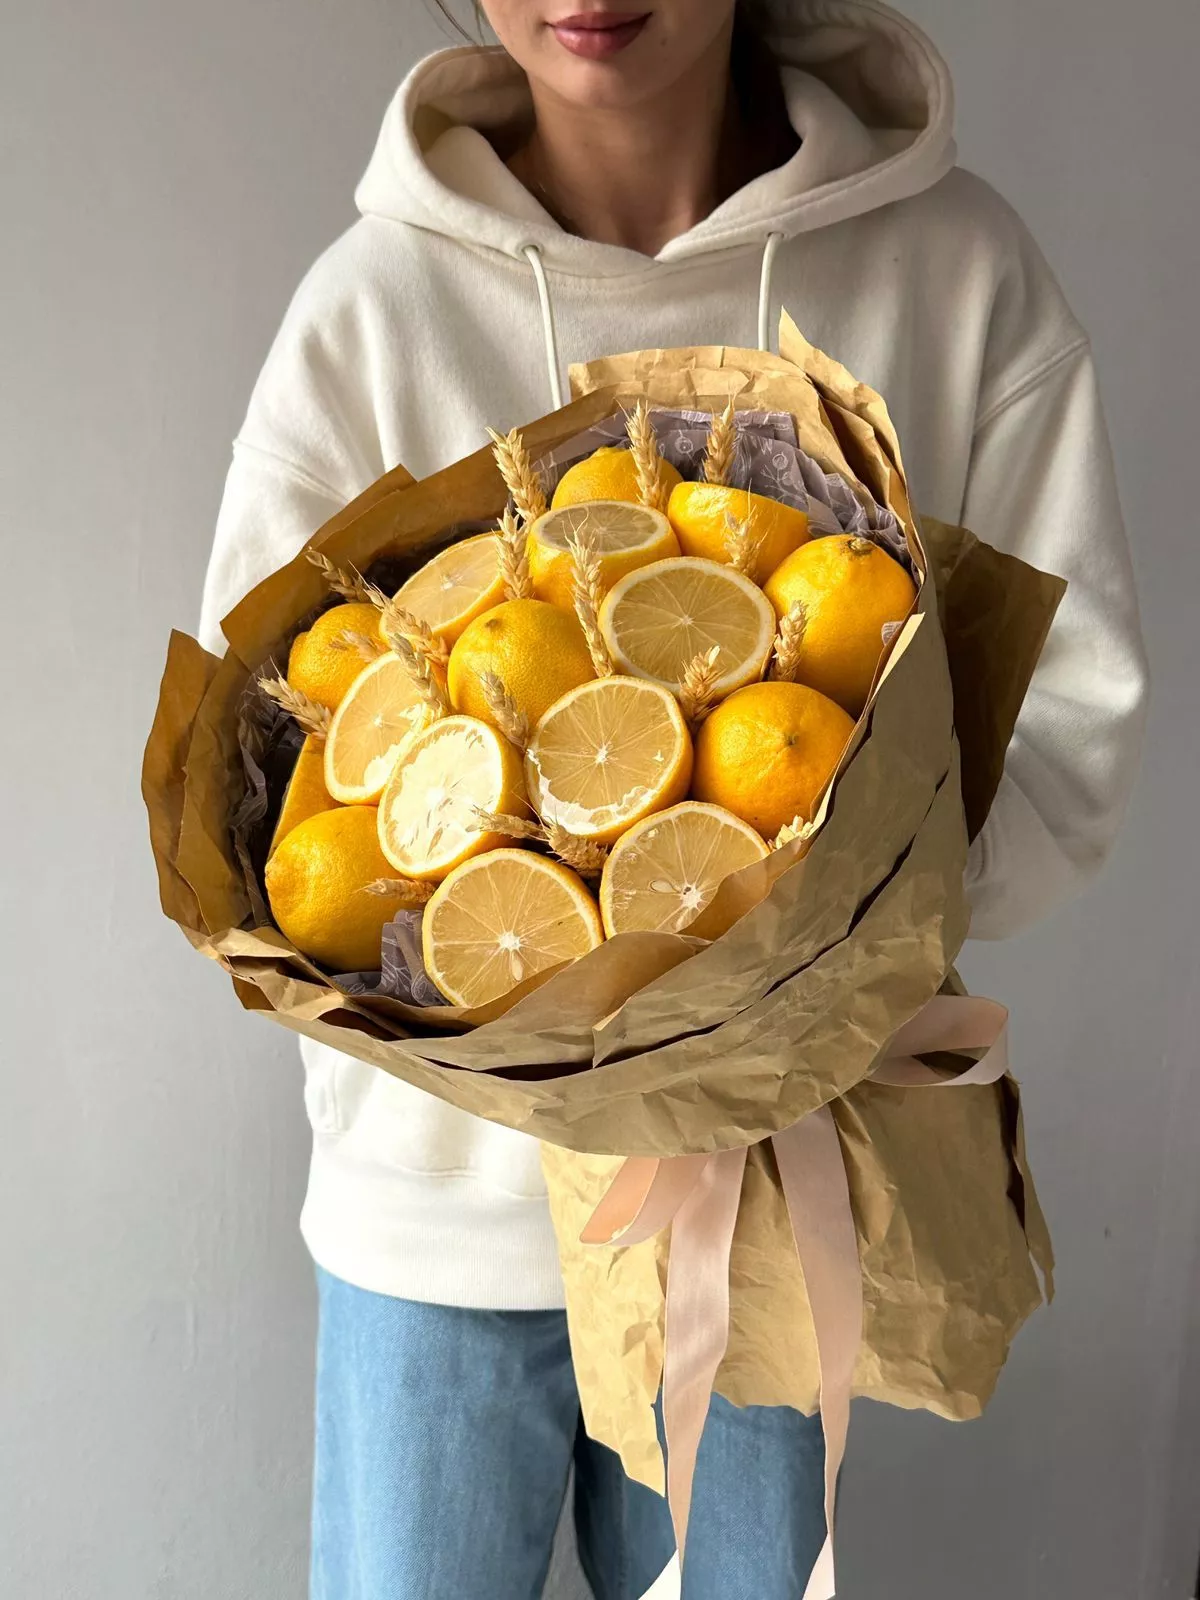 Фруктовый букет "Лимонник" из лимонов  пшеницы